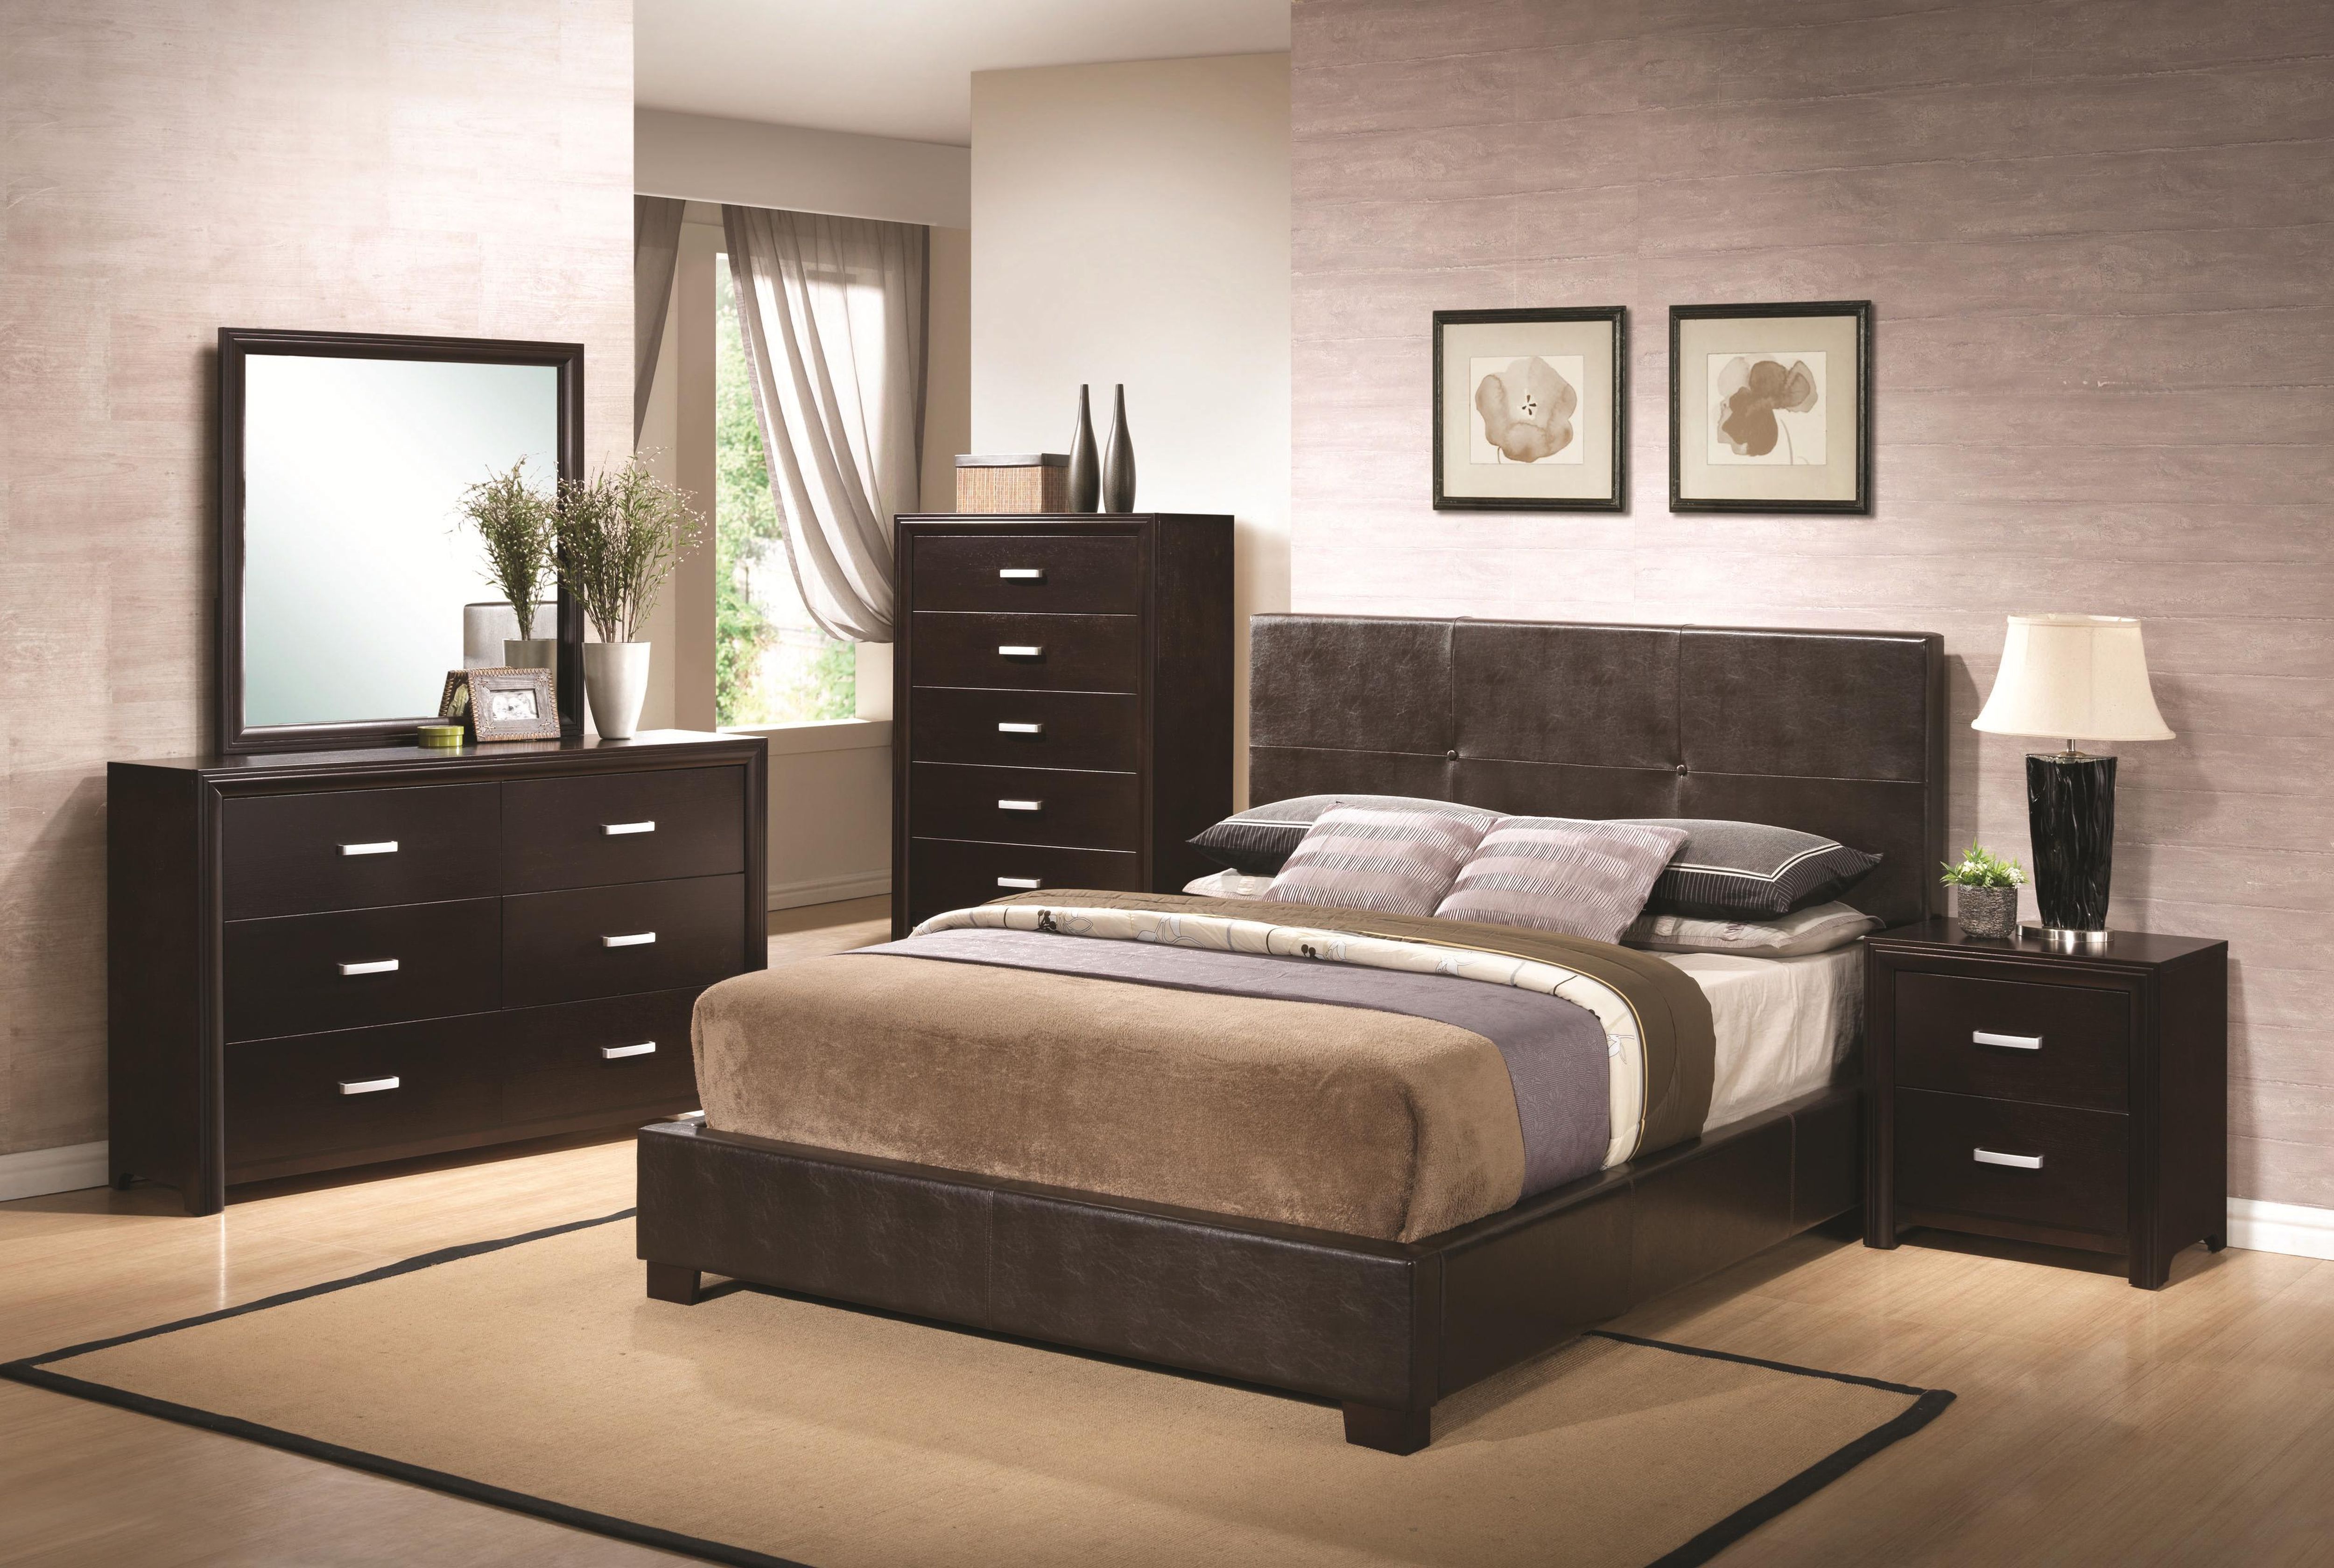 bedroom furniture sets for men photo - 1